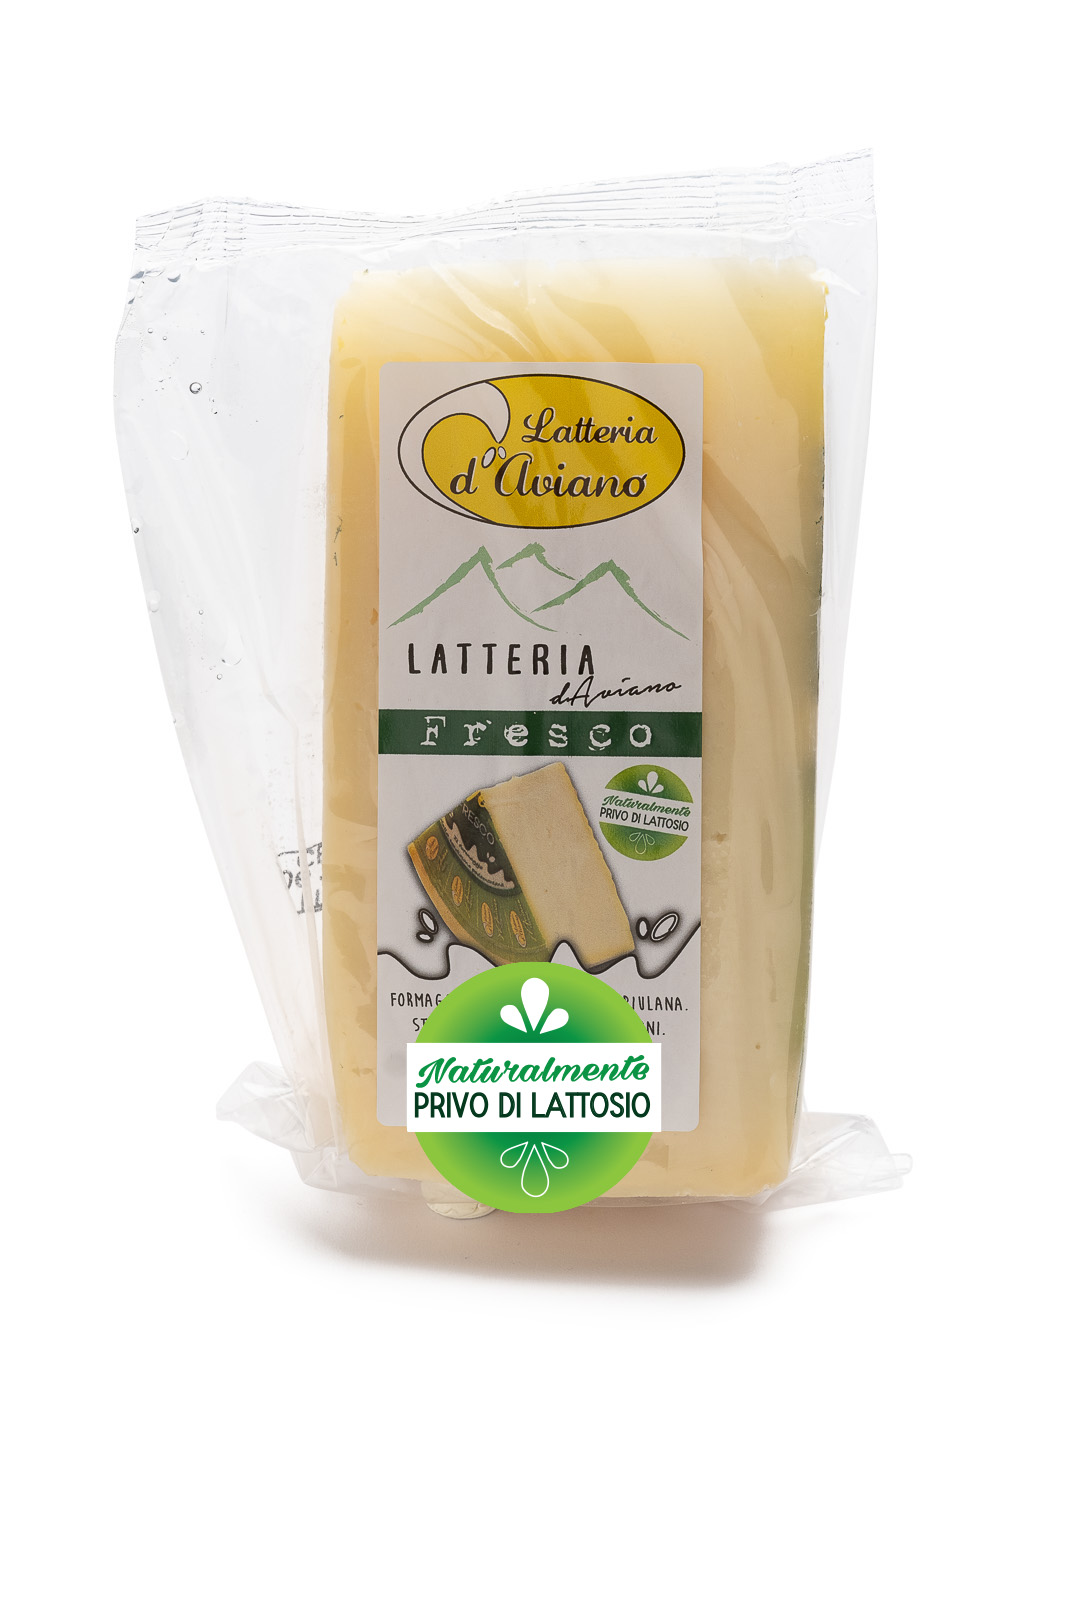 Formaggio - senza lattosio - latteria d'Aviano fresco - Del Ben formaggi - 300g